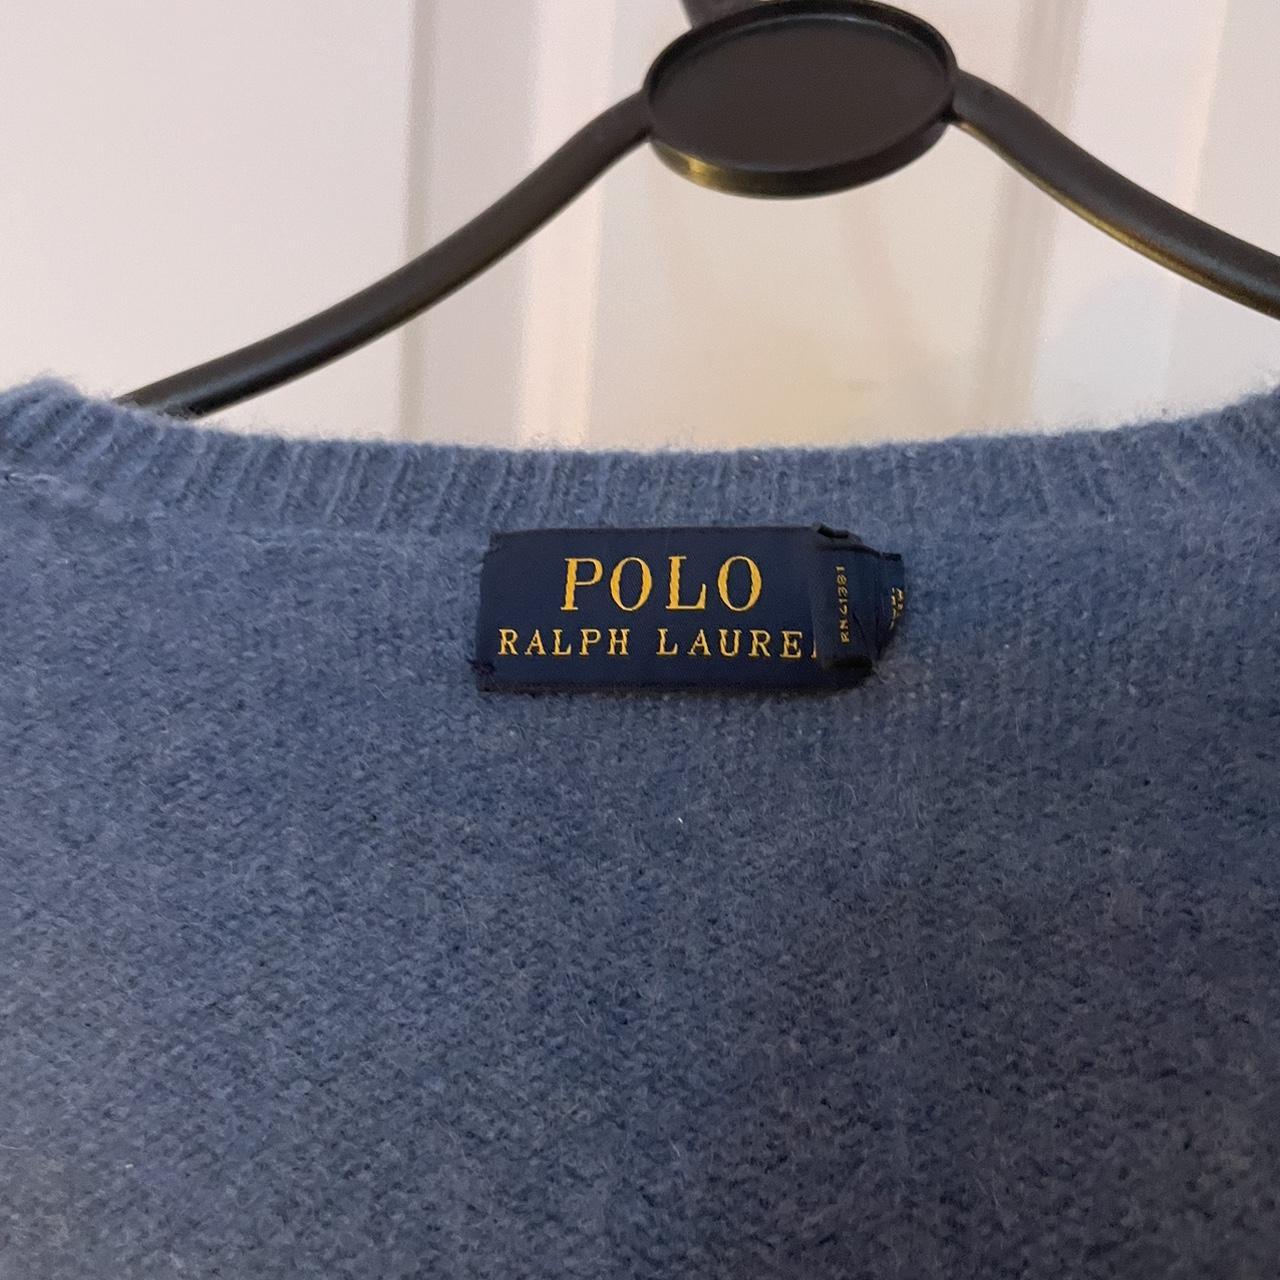 Polo Ralph Lauren jumper Good condition - Depop